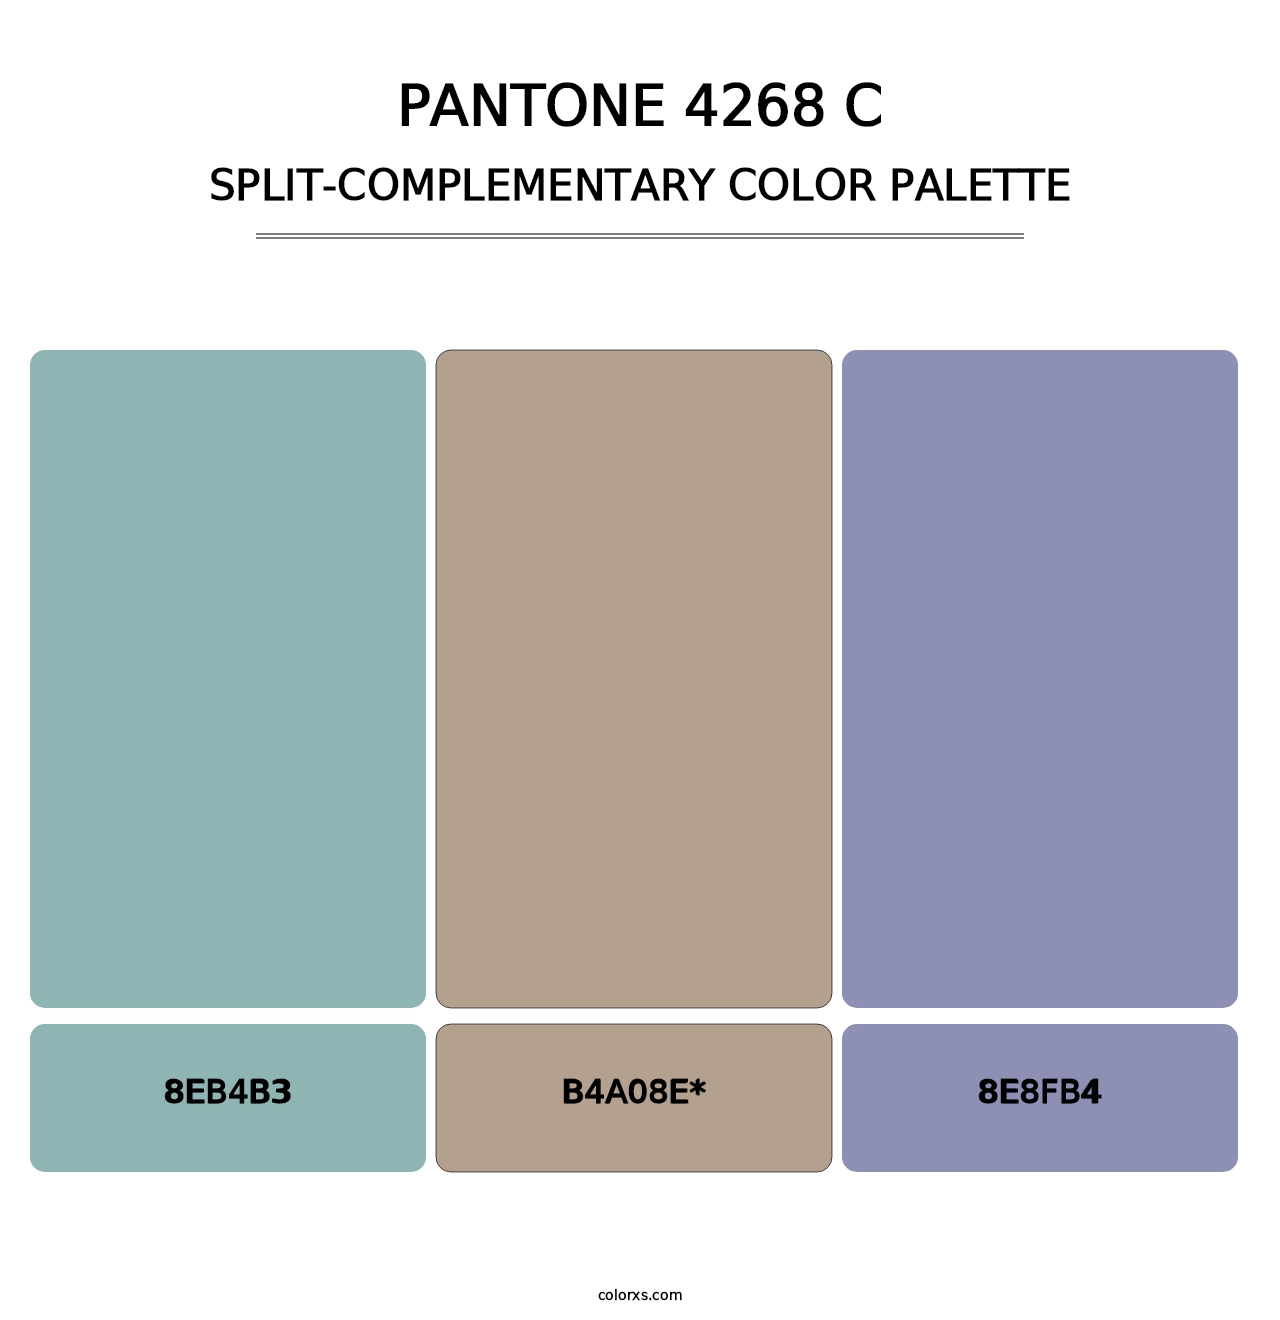 PANTONE 4268 C - Split-Complementary Color Palette